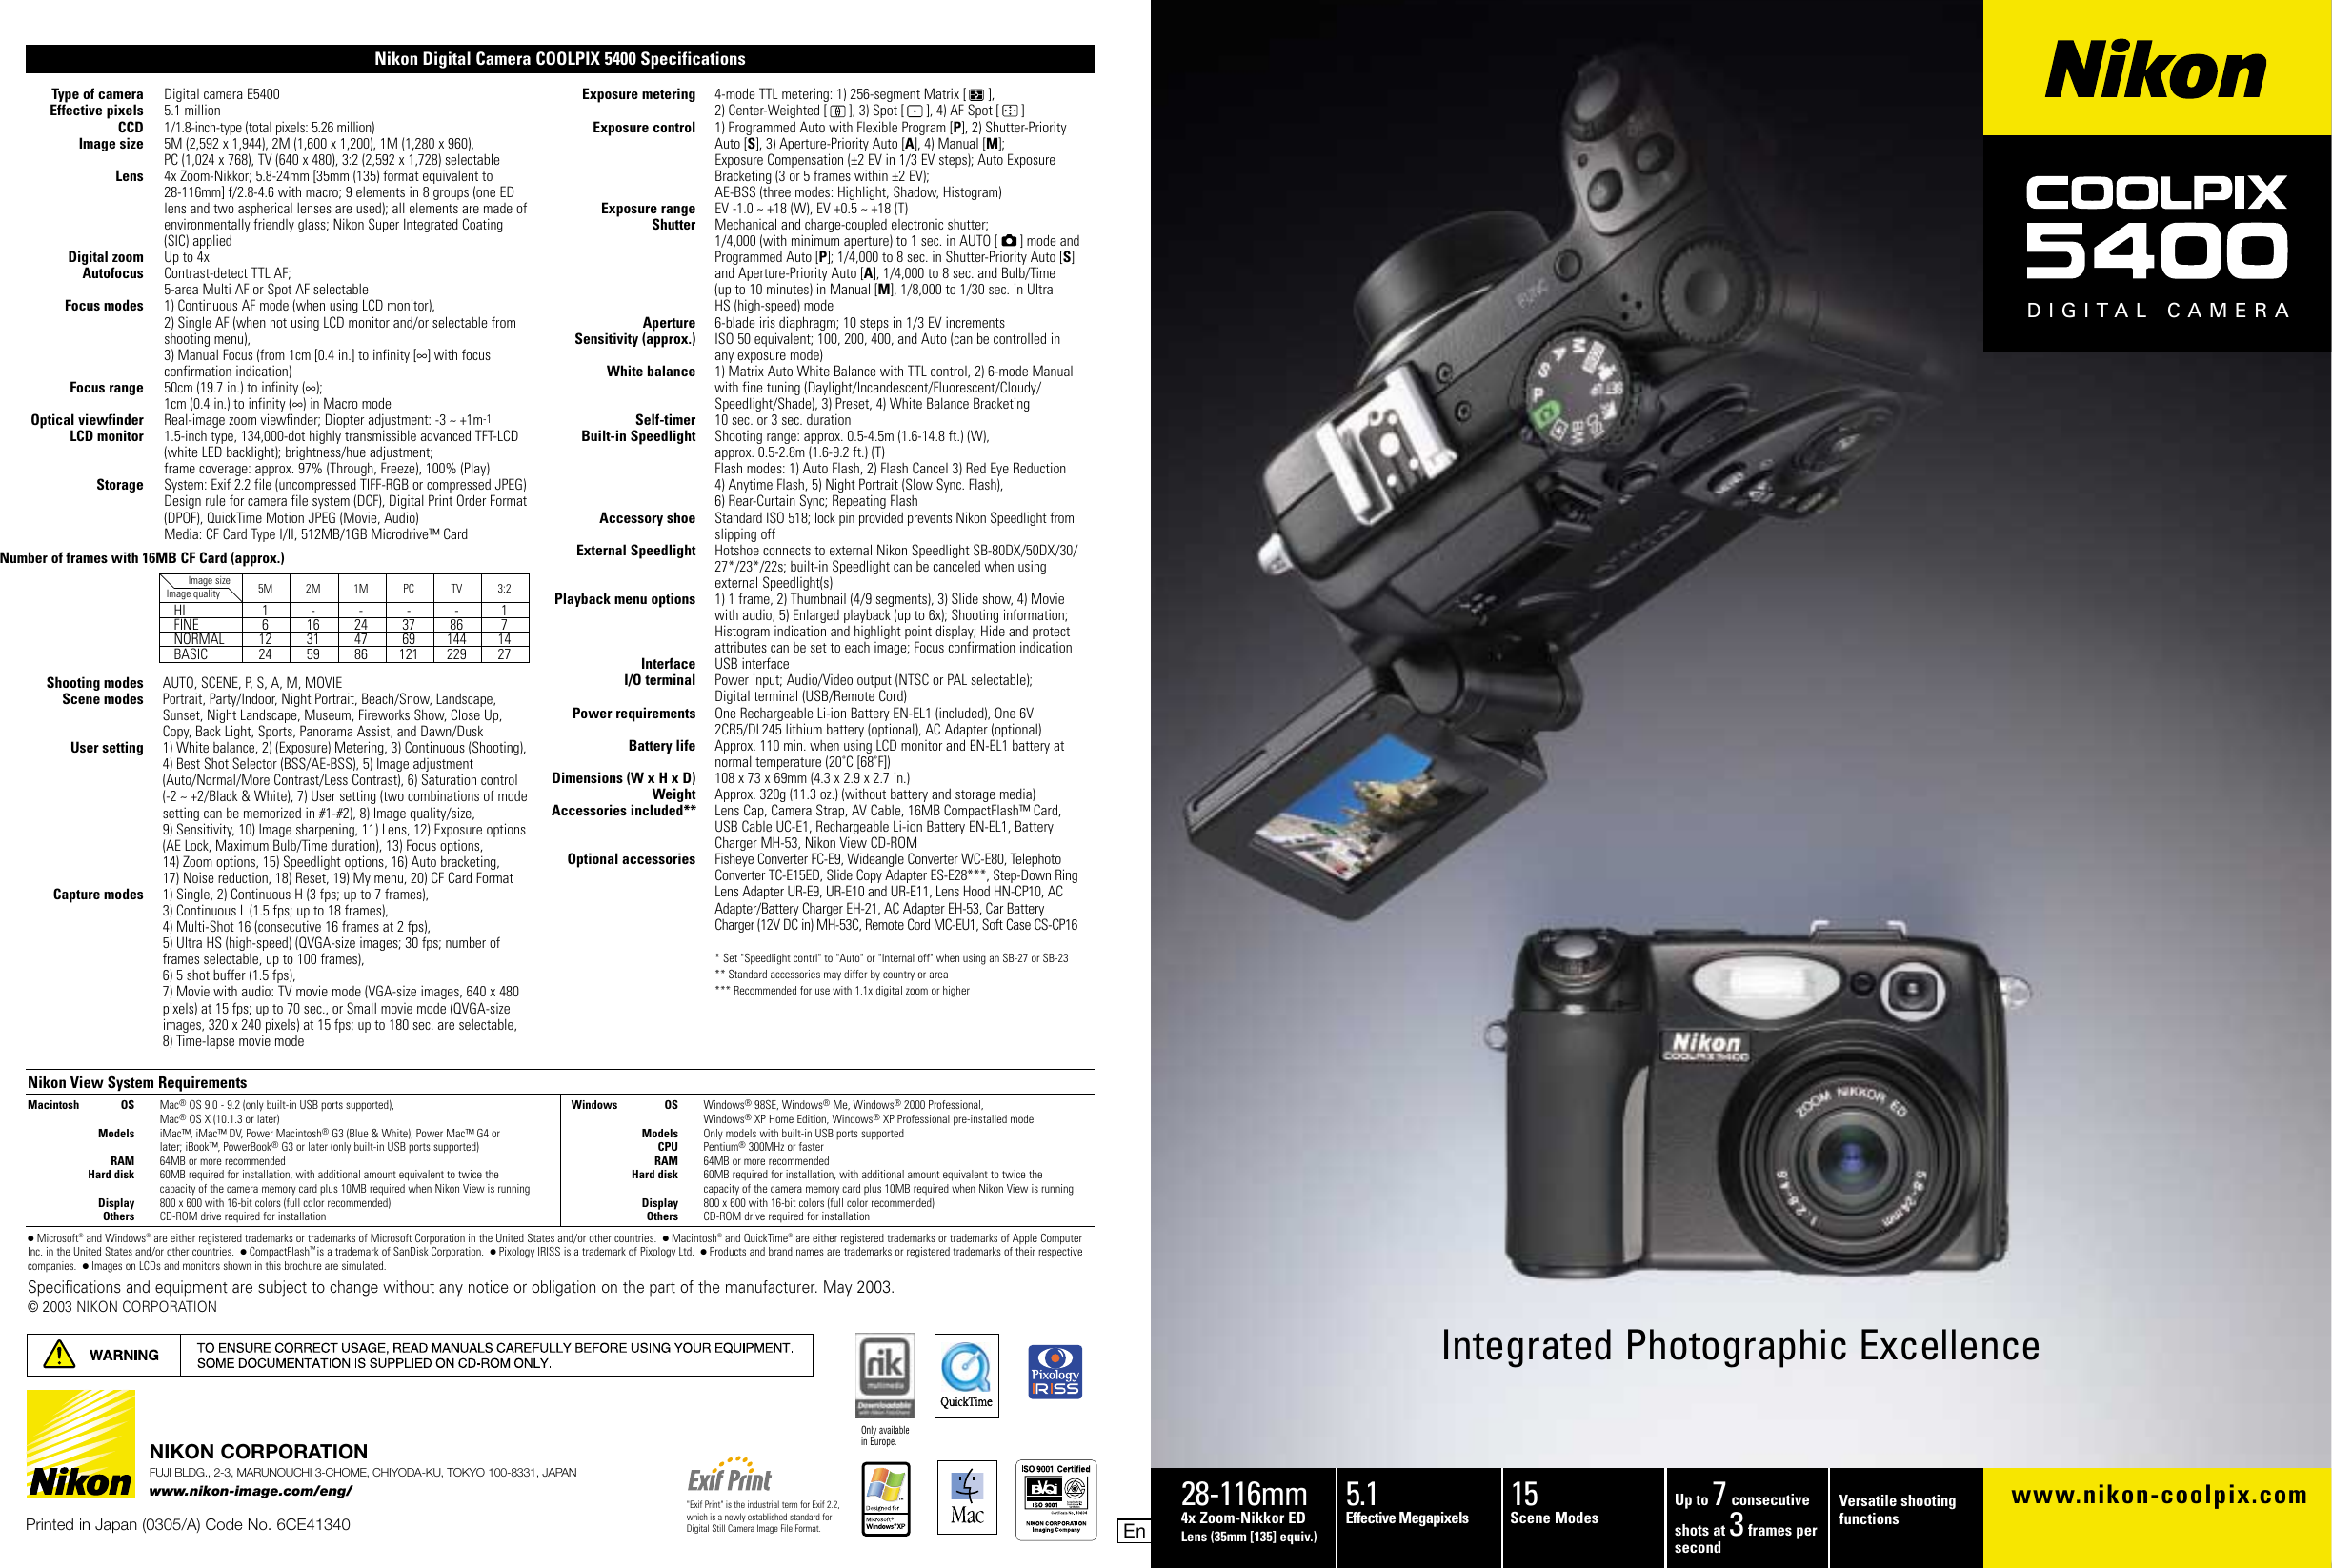 geef de bloem water Eigenlijk invoegen Nikon Coolpix 5400 Users Manual Coolpix5400_8p